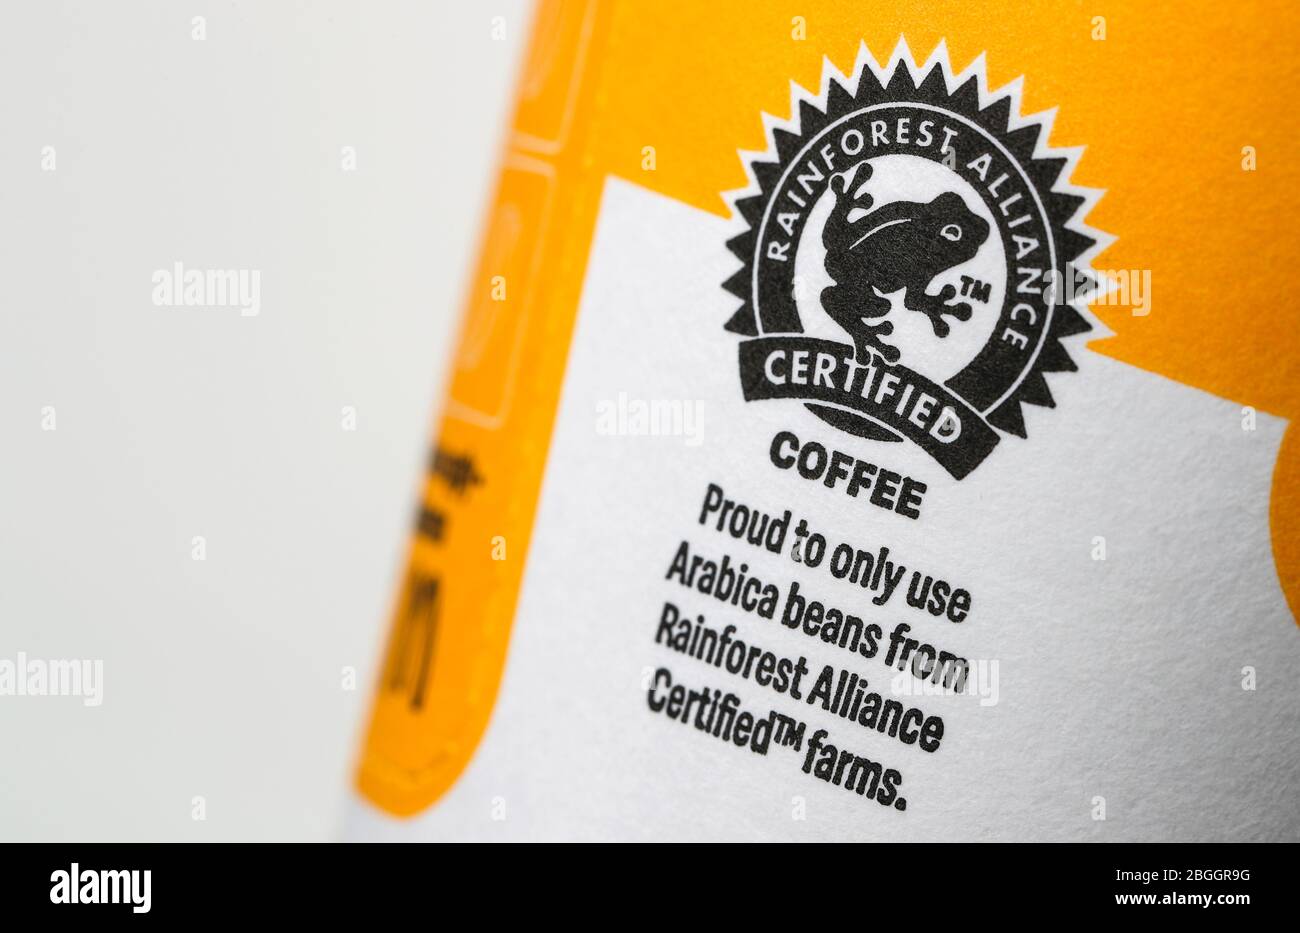 Logo café certifié Rainforest Alliance sur une tasse à café à emporter Banque D'Images